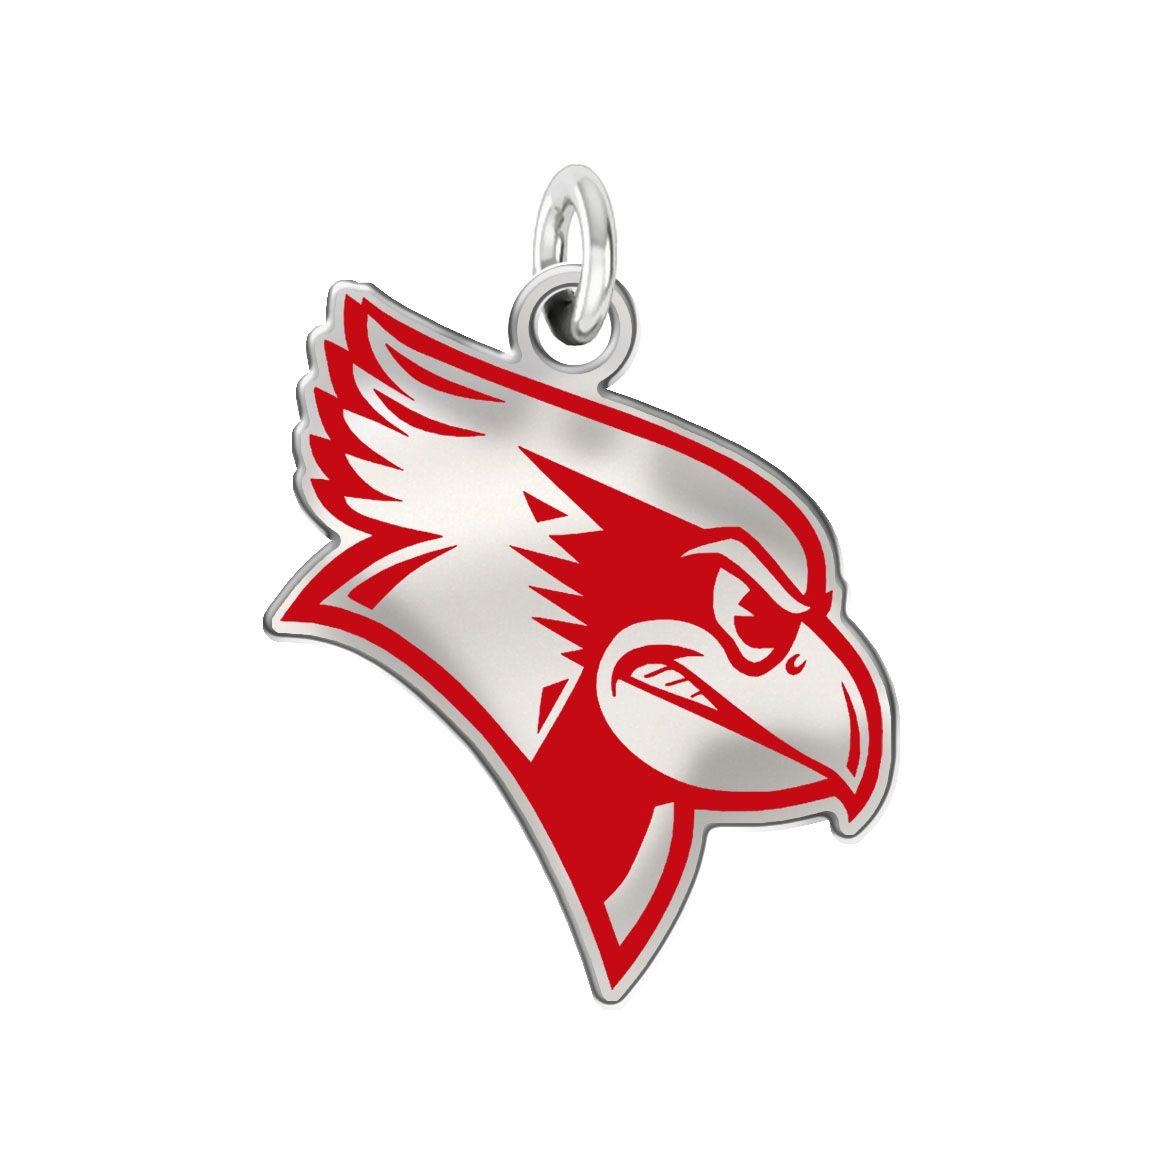 Illinois State Redbirds Logo - Illinois State Redbirds Logo Charm